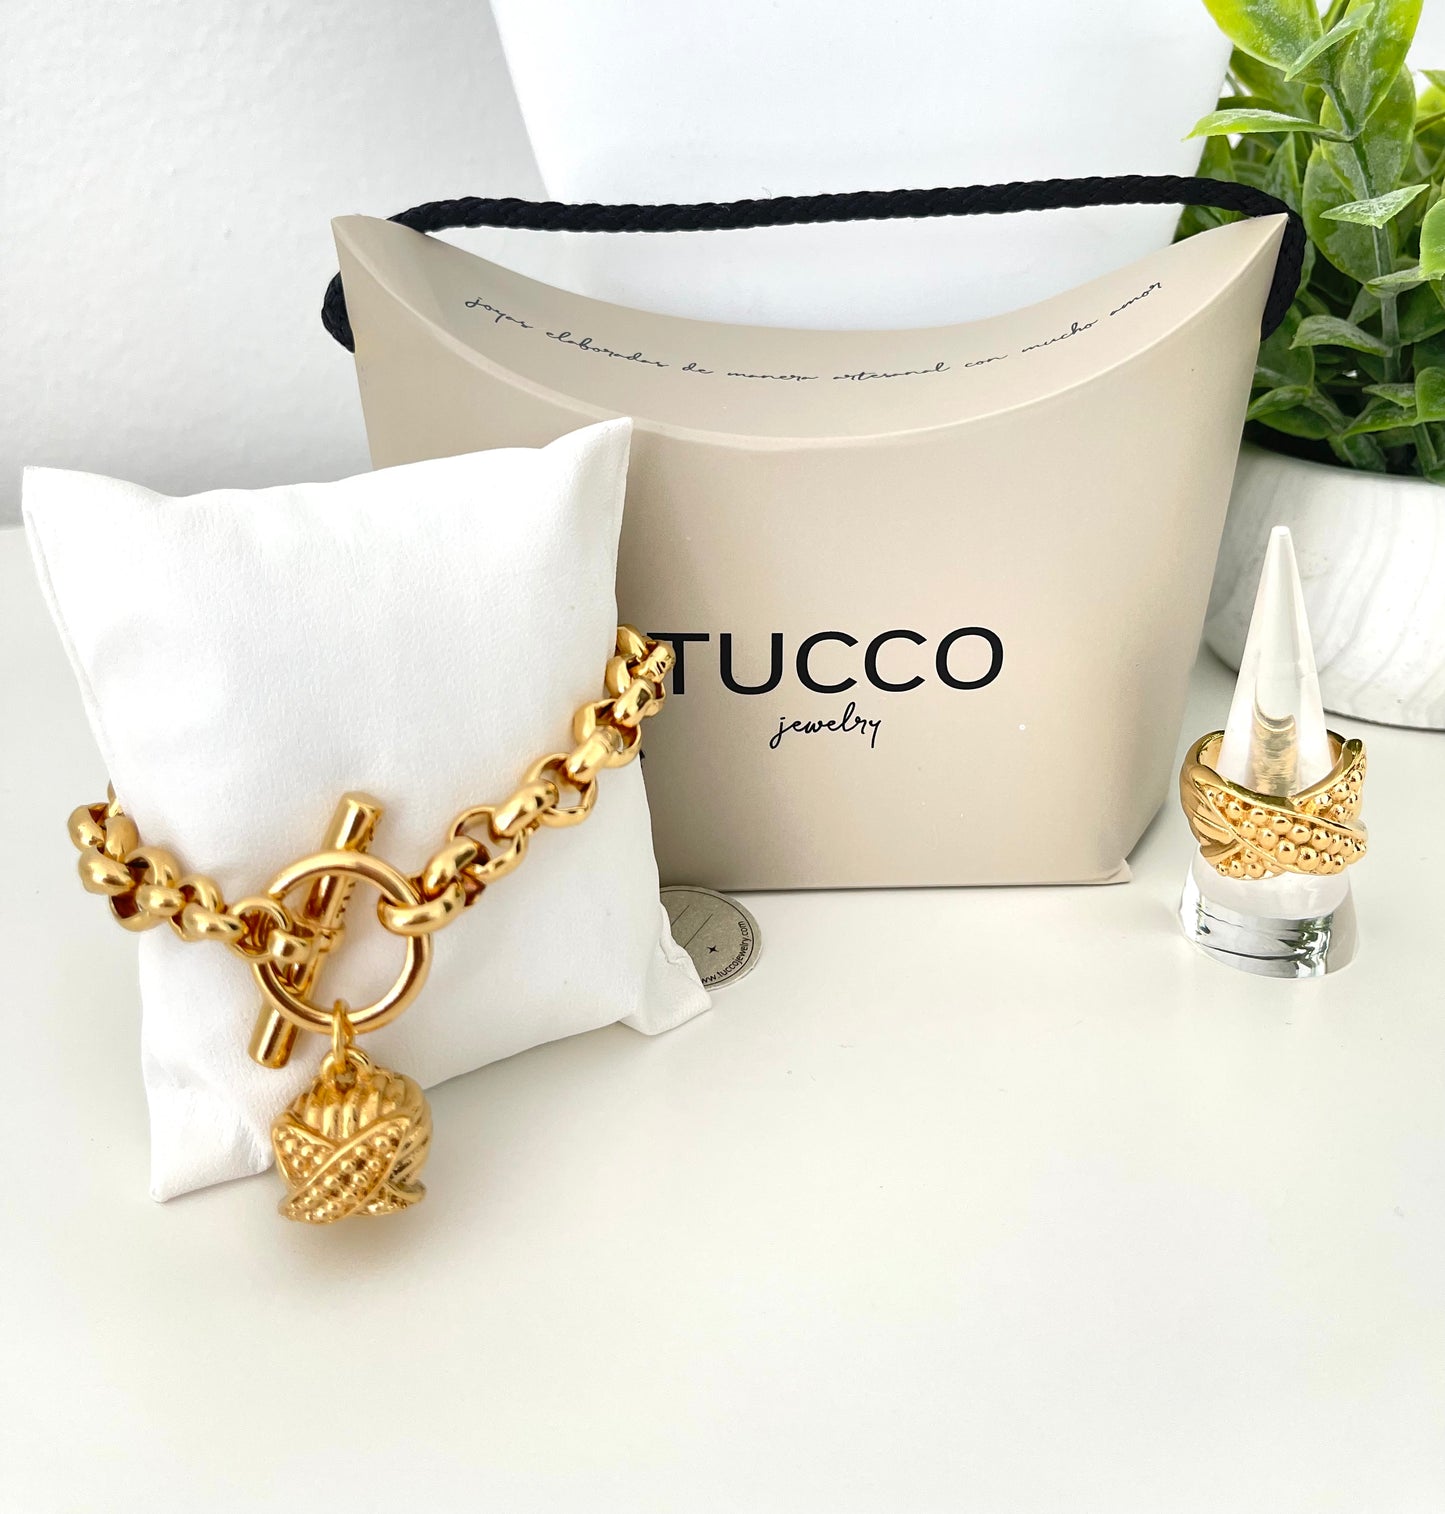 Tucco- Colección Sirocco